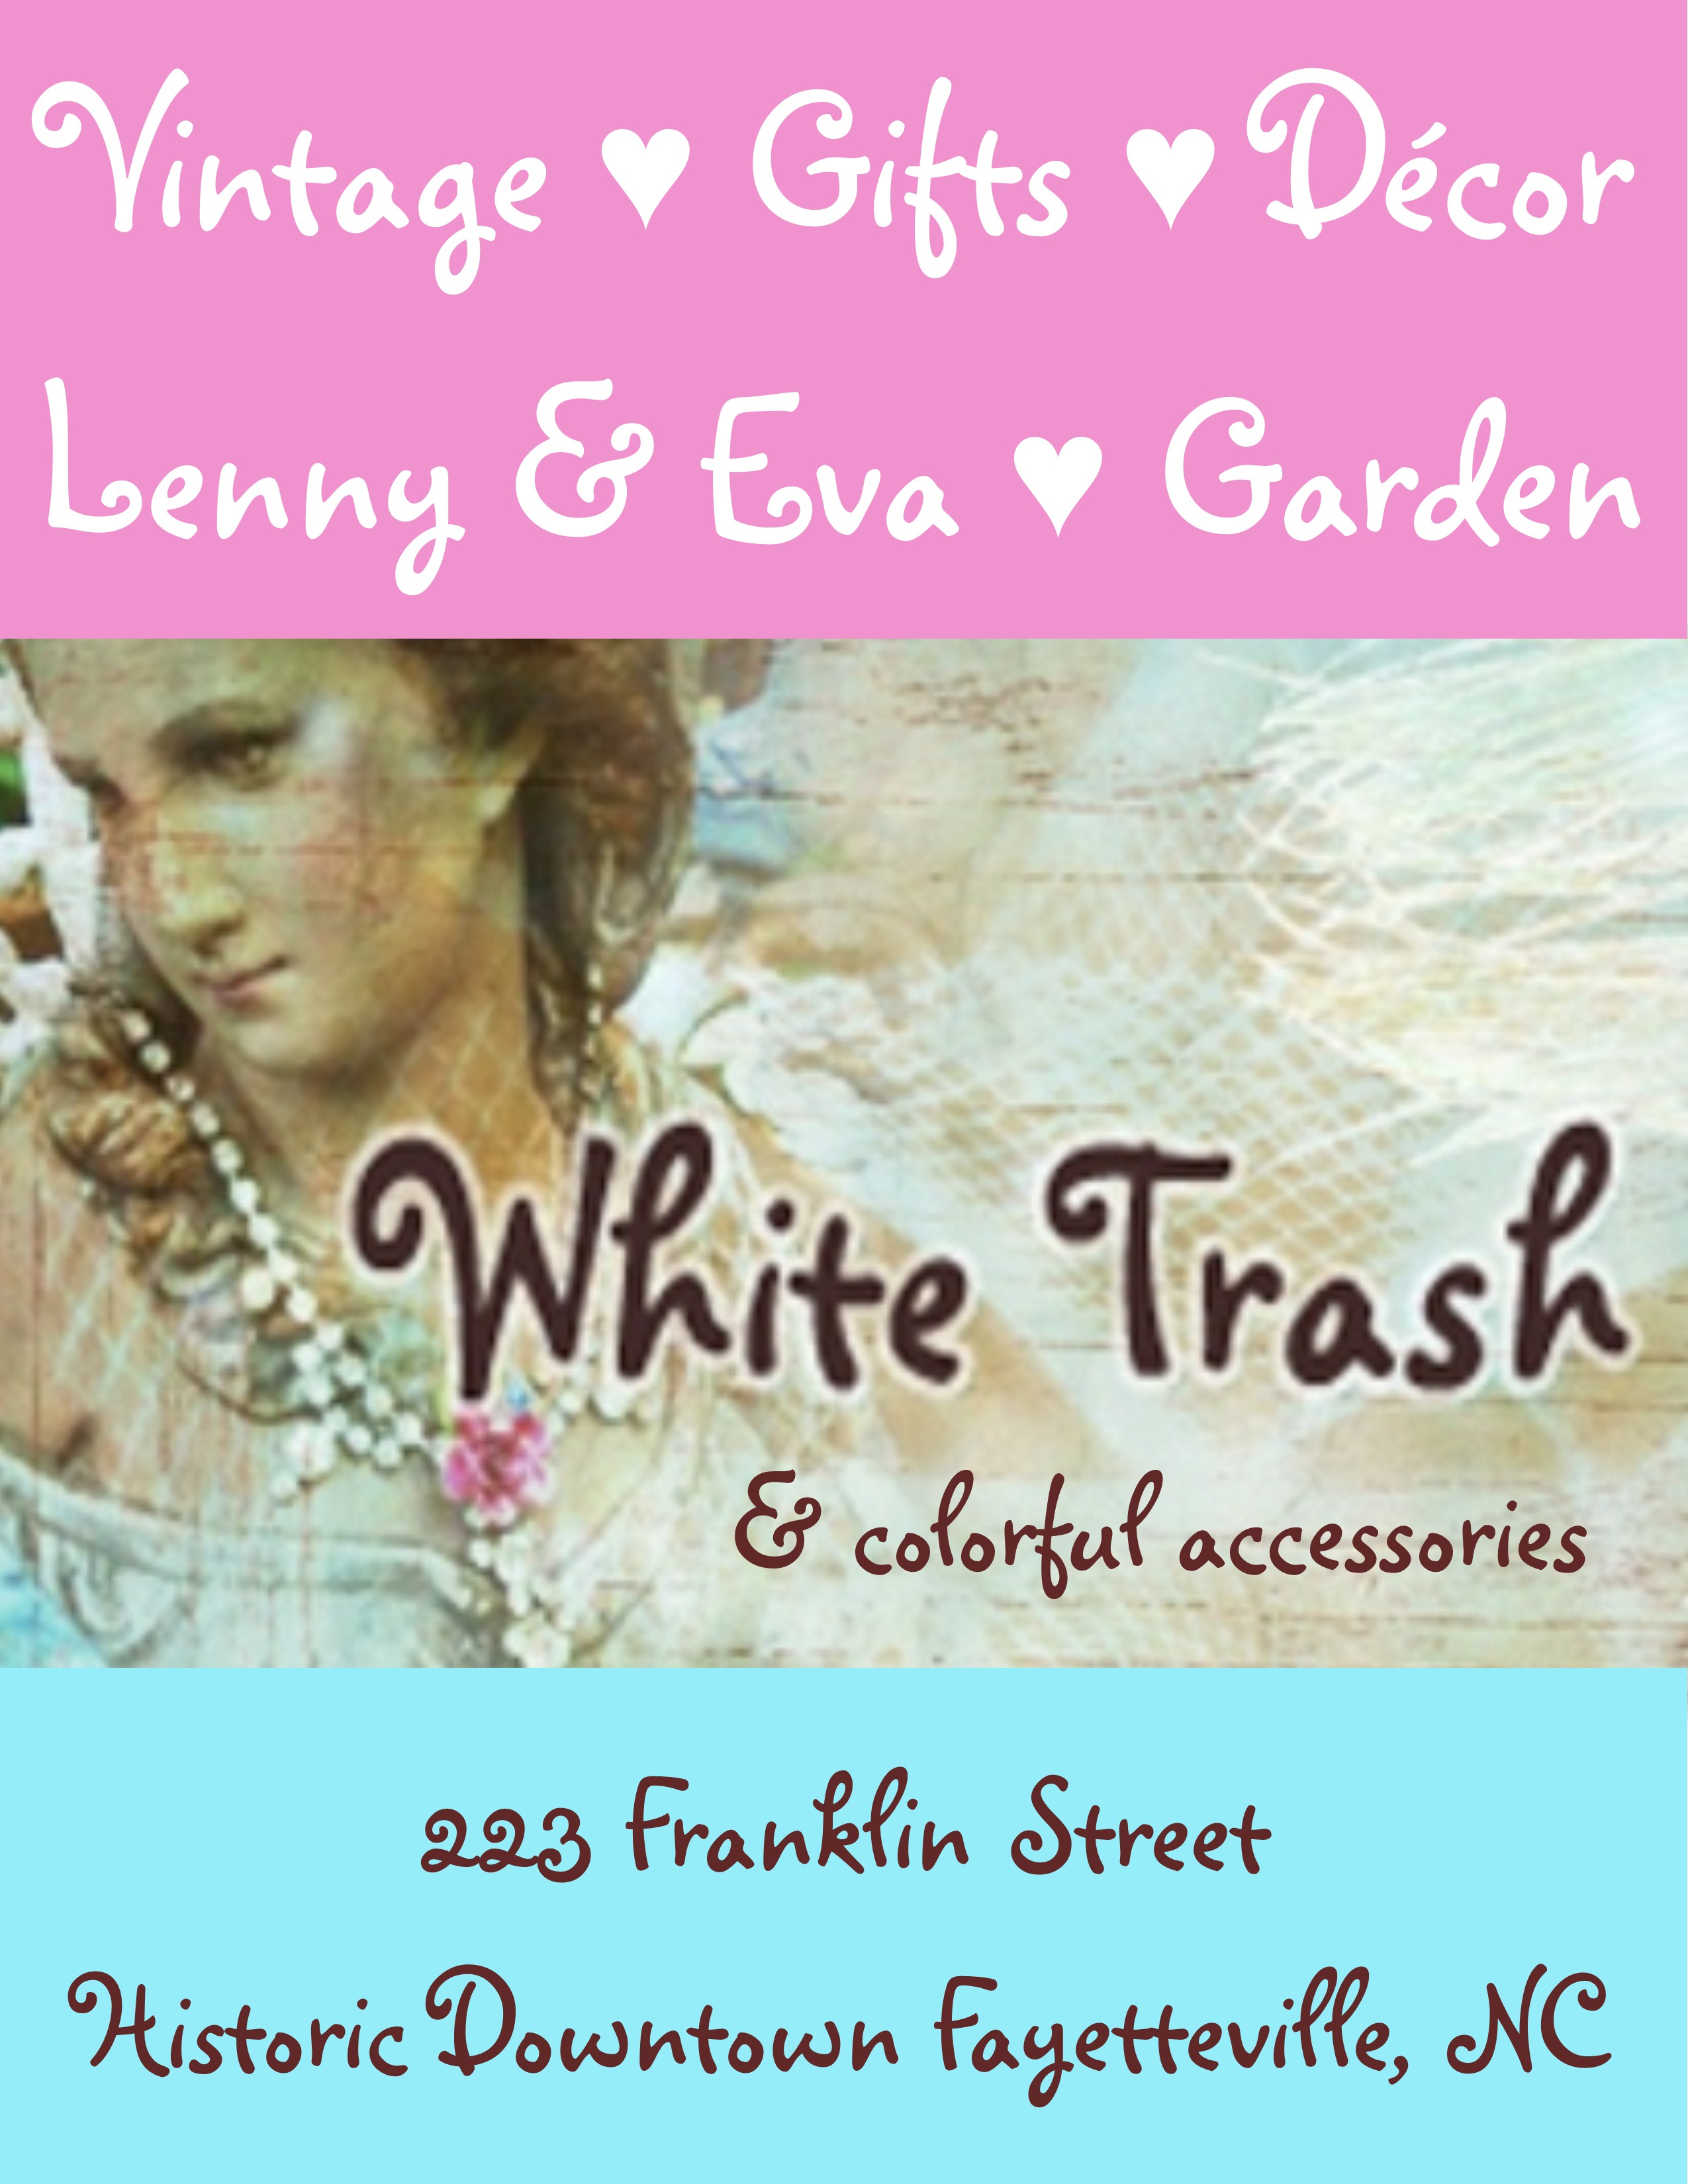 White Trash & colorful accessories